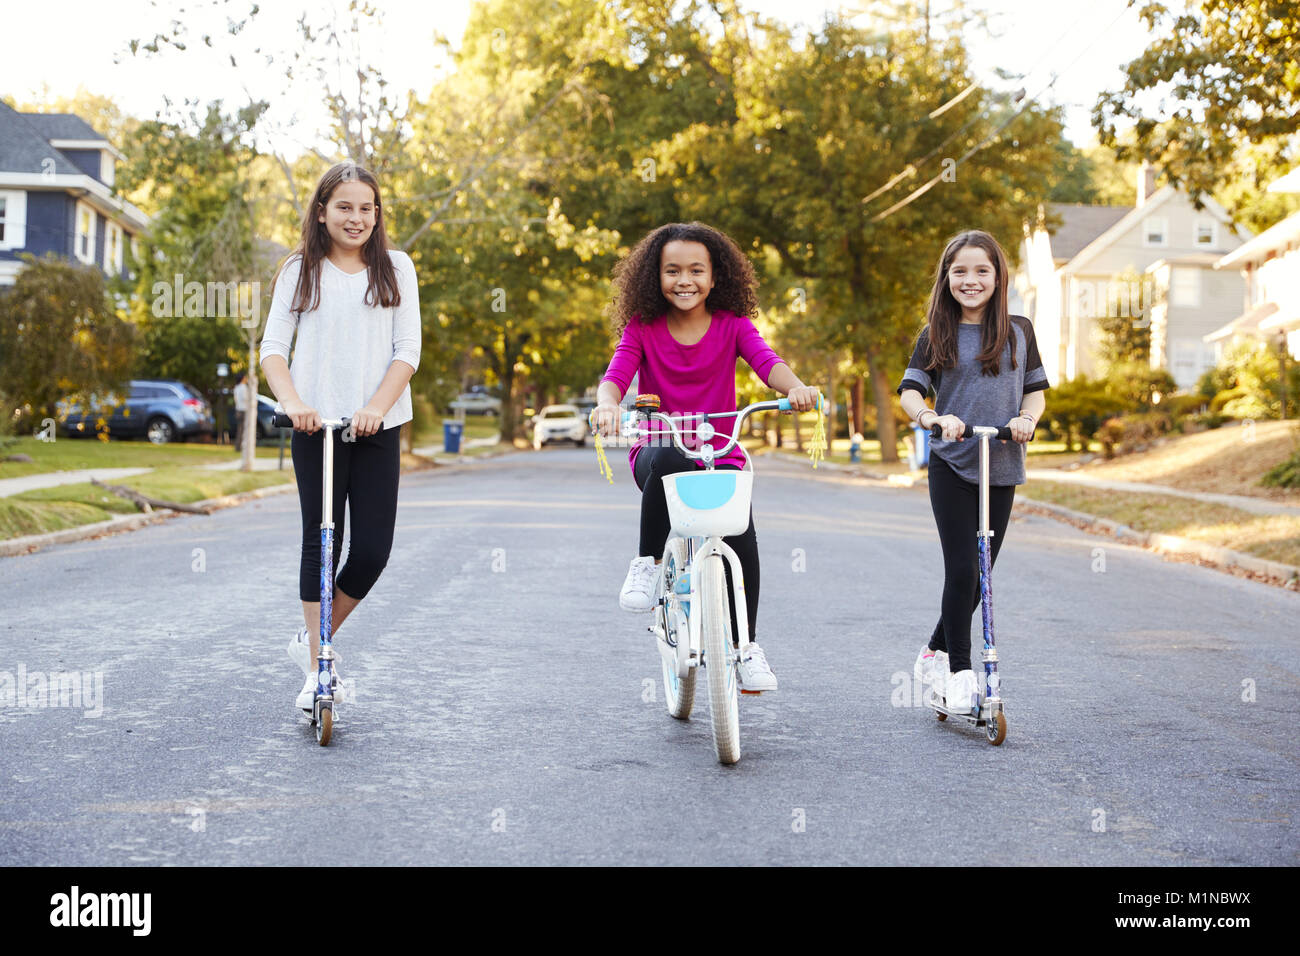 Trois jeunes filles pré-adolescentes sur les scooters et vélos à la recherche à l'appareil photo Banque D'Images